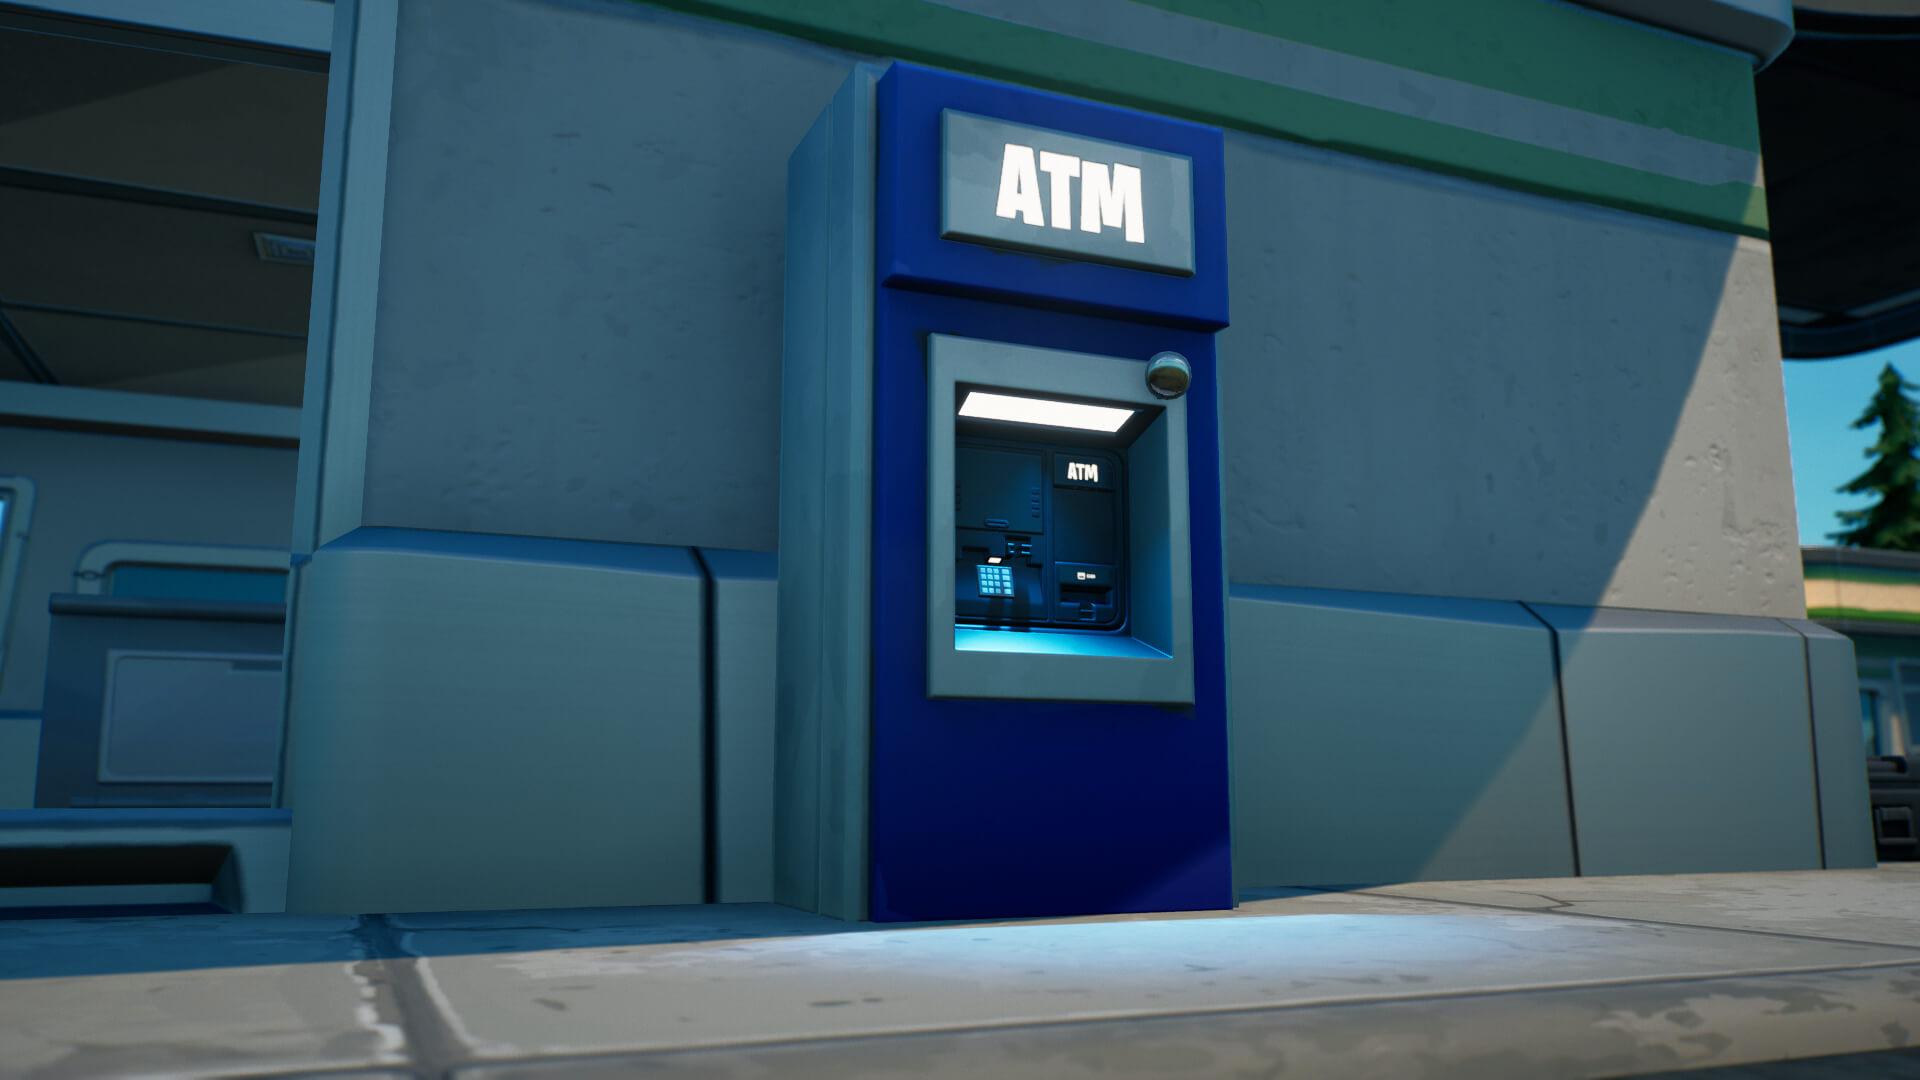 ATM In Fortnite